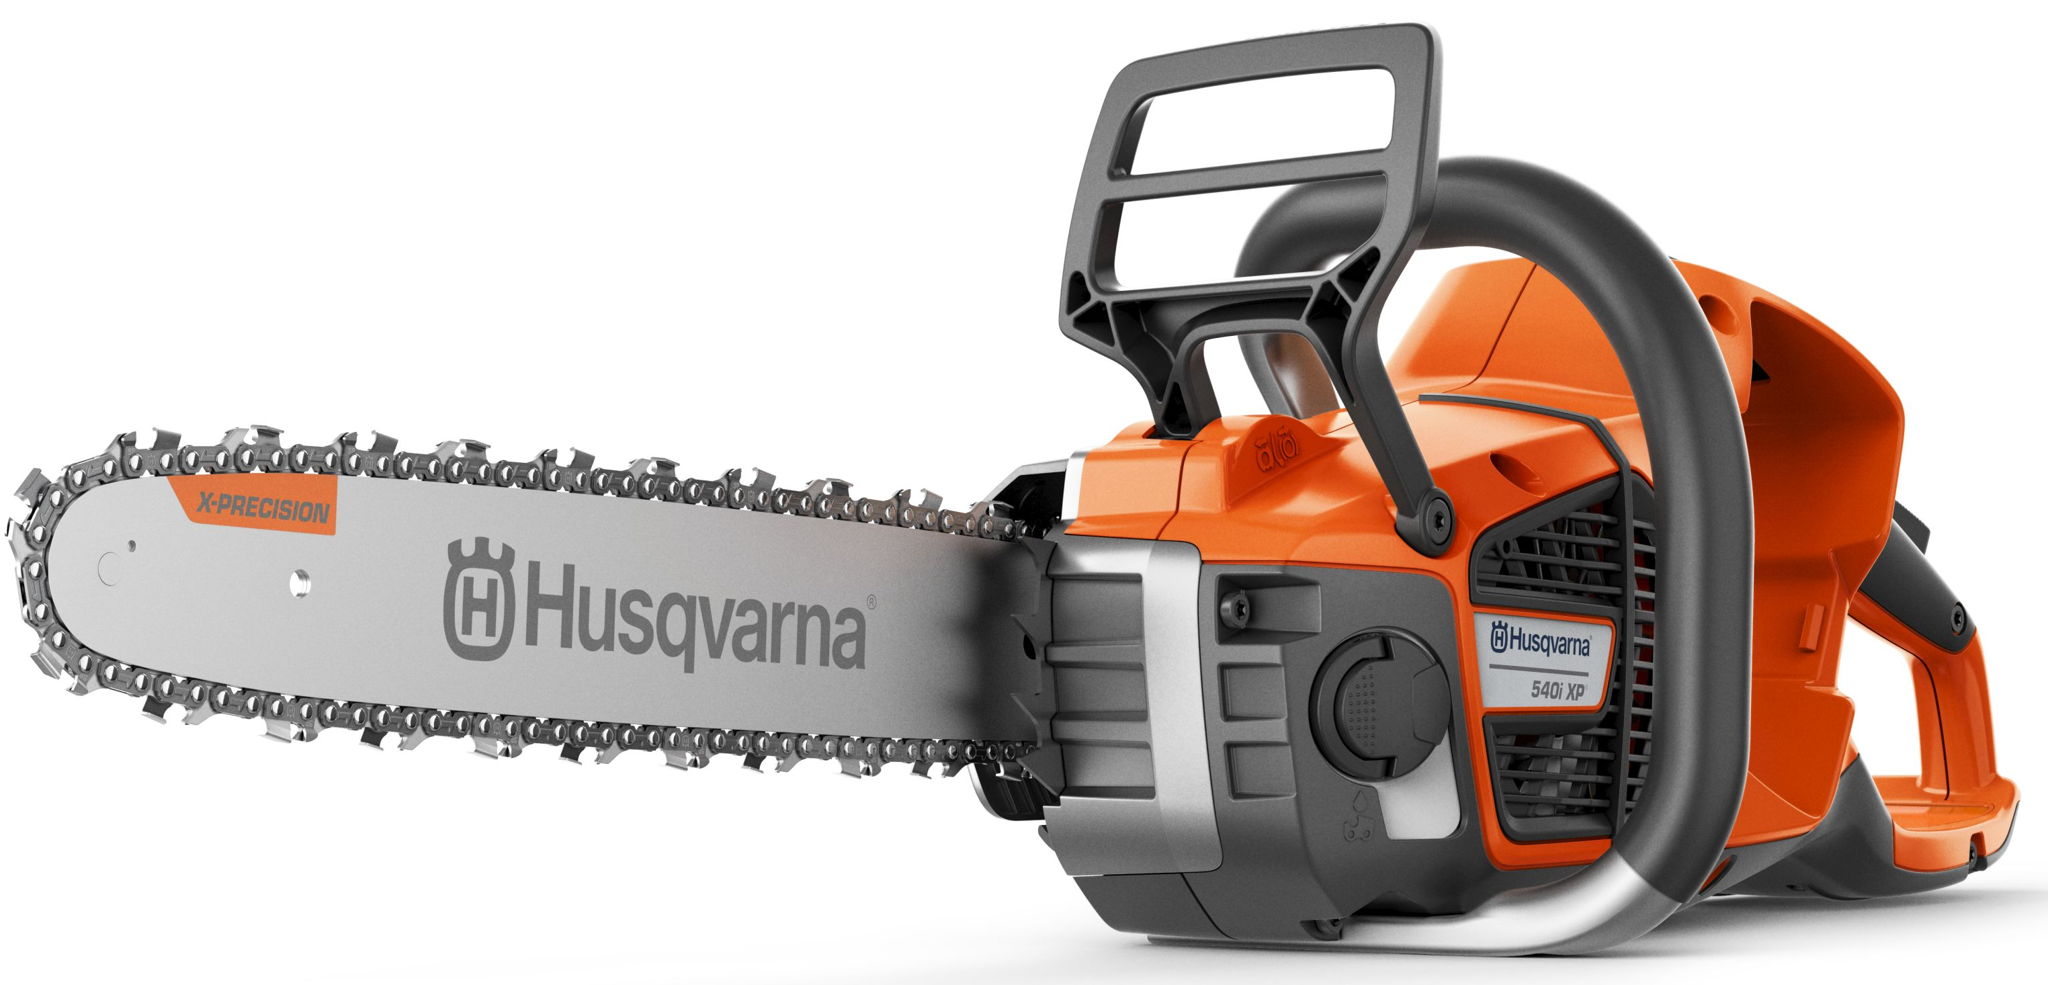 Husqvarna lance sa dernière génération de tronçonneuses 70 cc